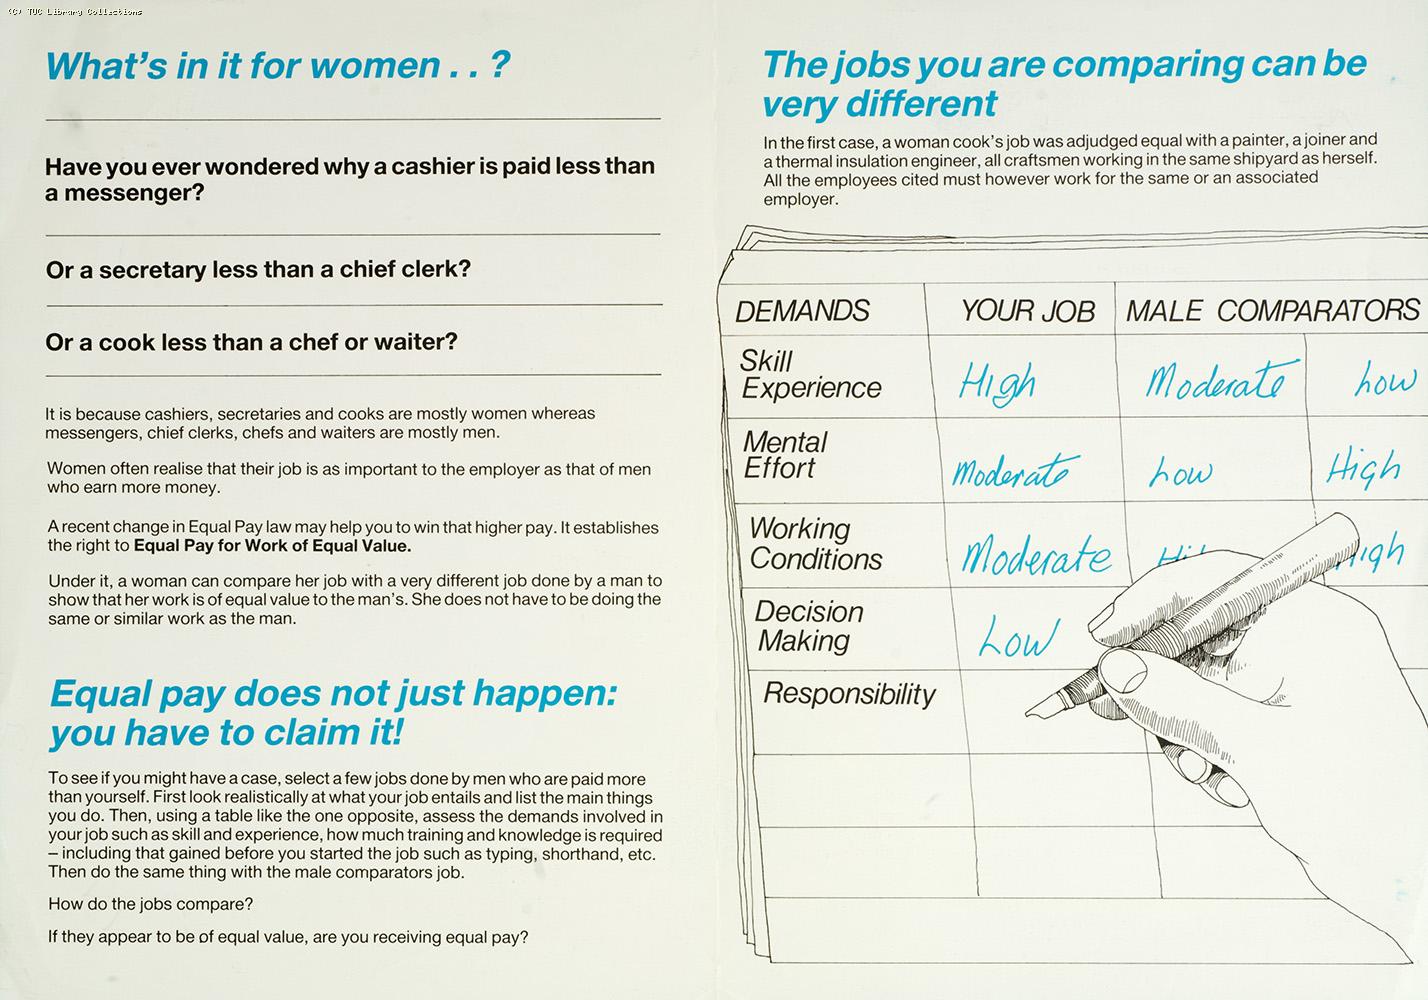 What's in it for women - BIFU leaflet, 1986